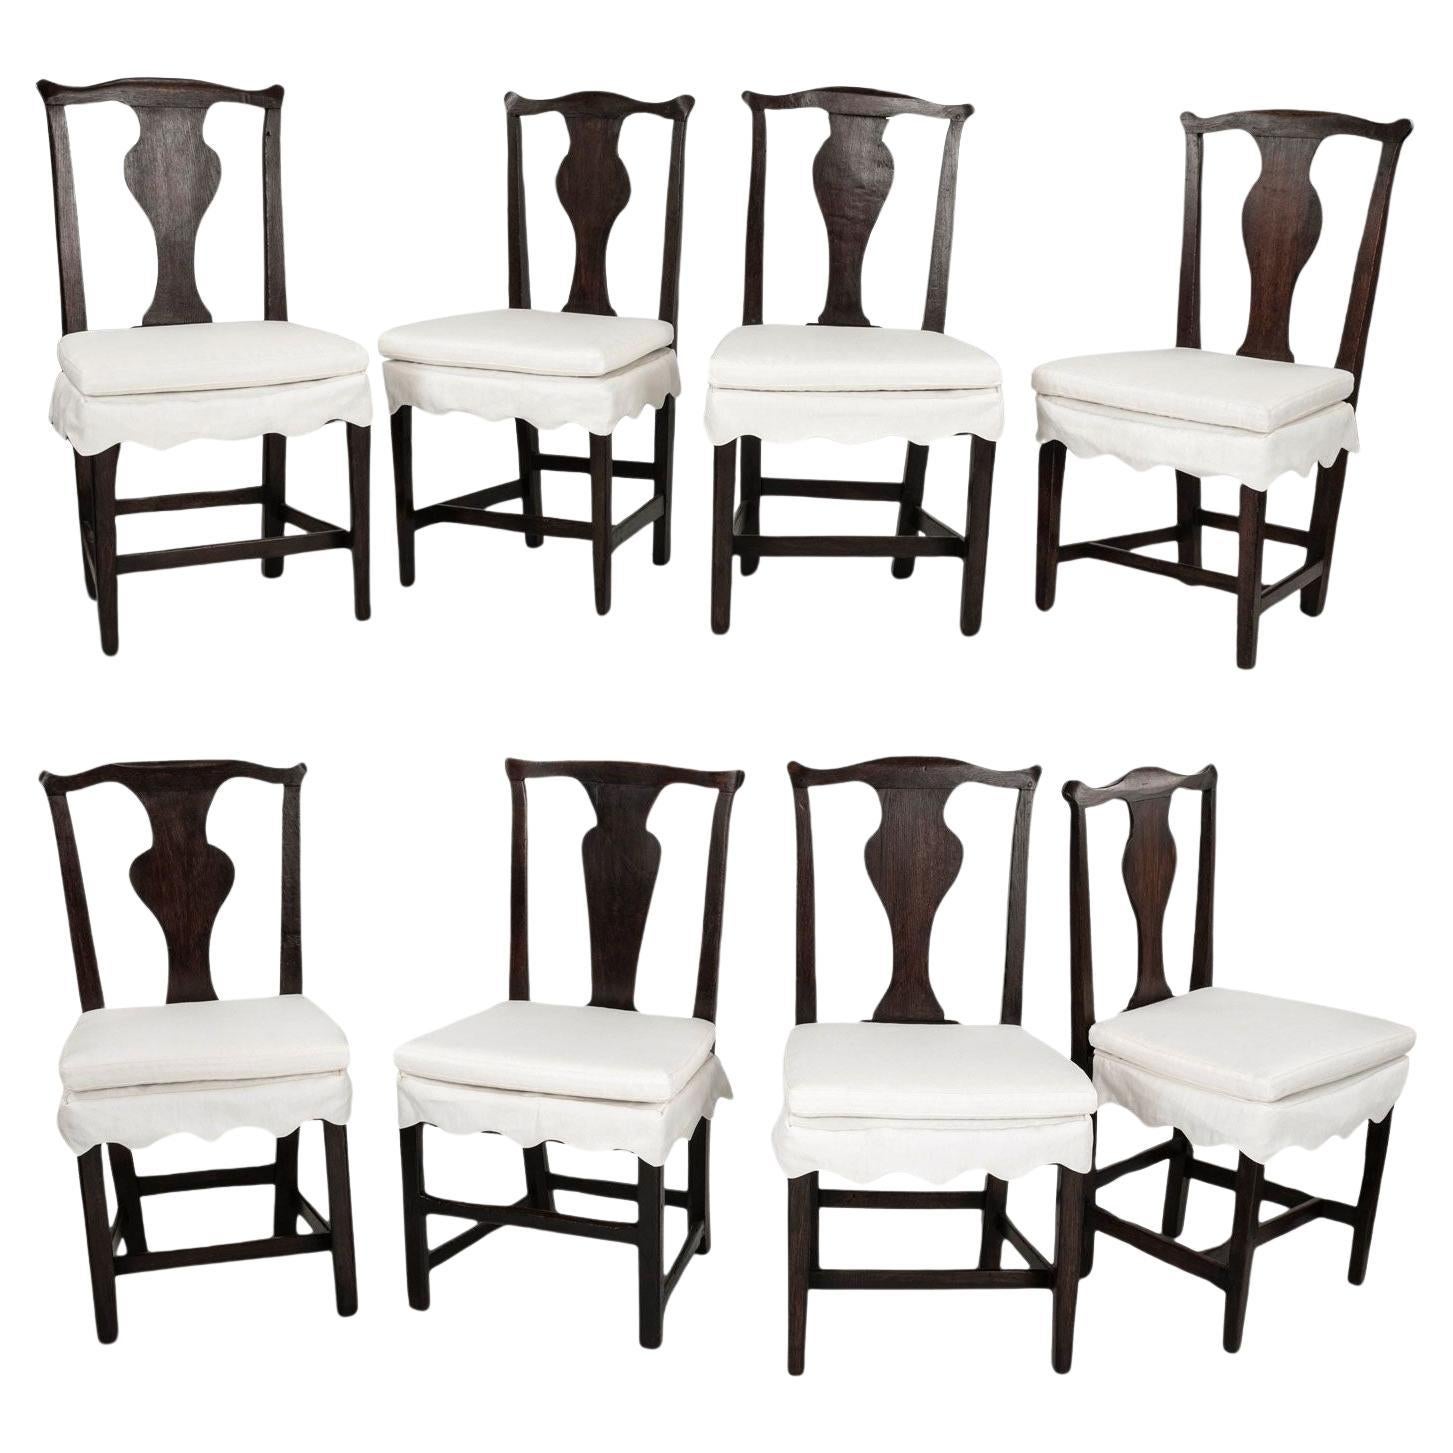 The Collective Set of Eight Georgian Dining Chairs (Ensemble de huit chaises de salle à manger géorgiennes)